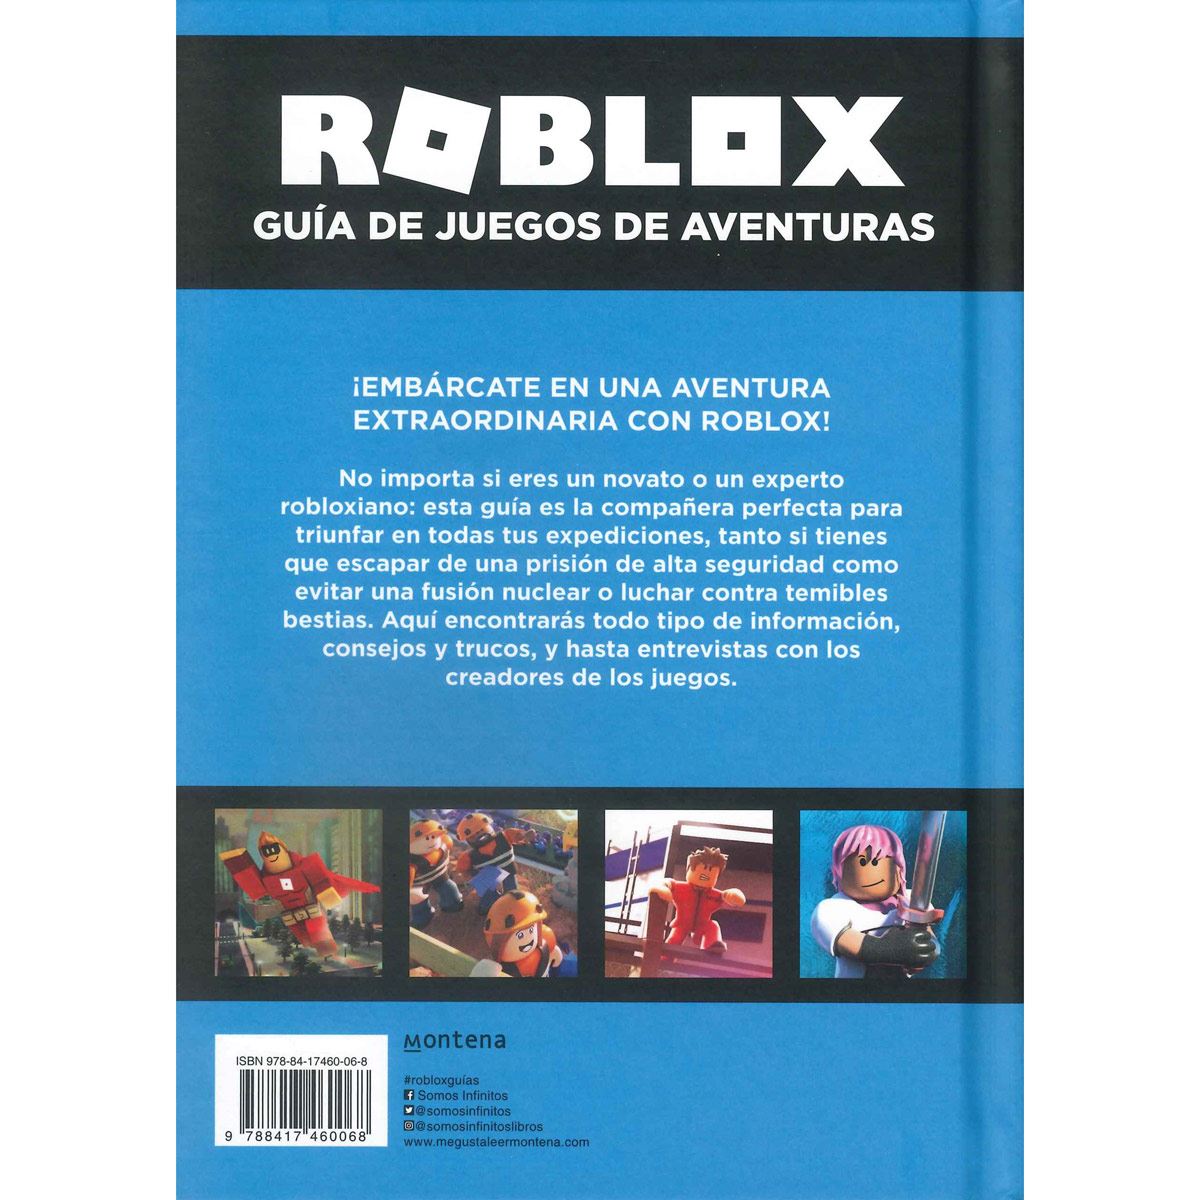 Roblox Guia De Juegos De Aventuras - guia del universo roblox tapa dura de 6 a 9 el corte ingles